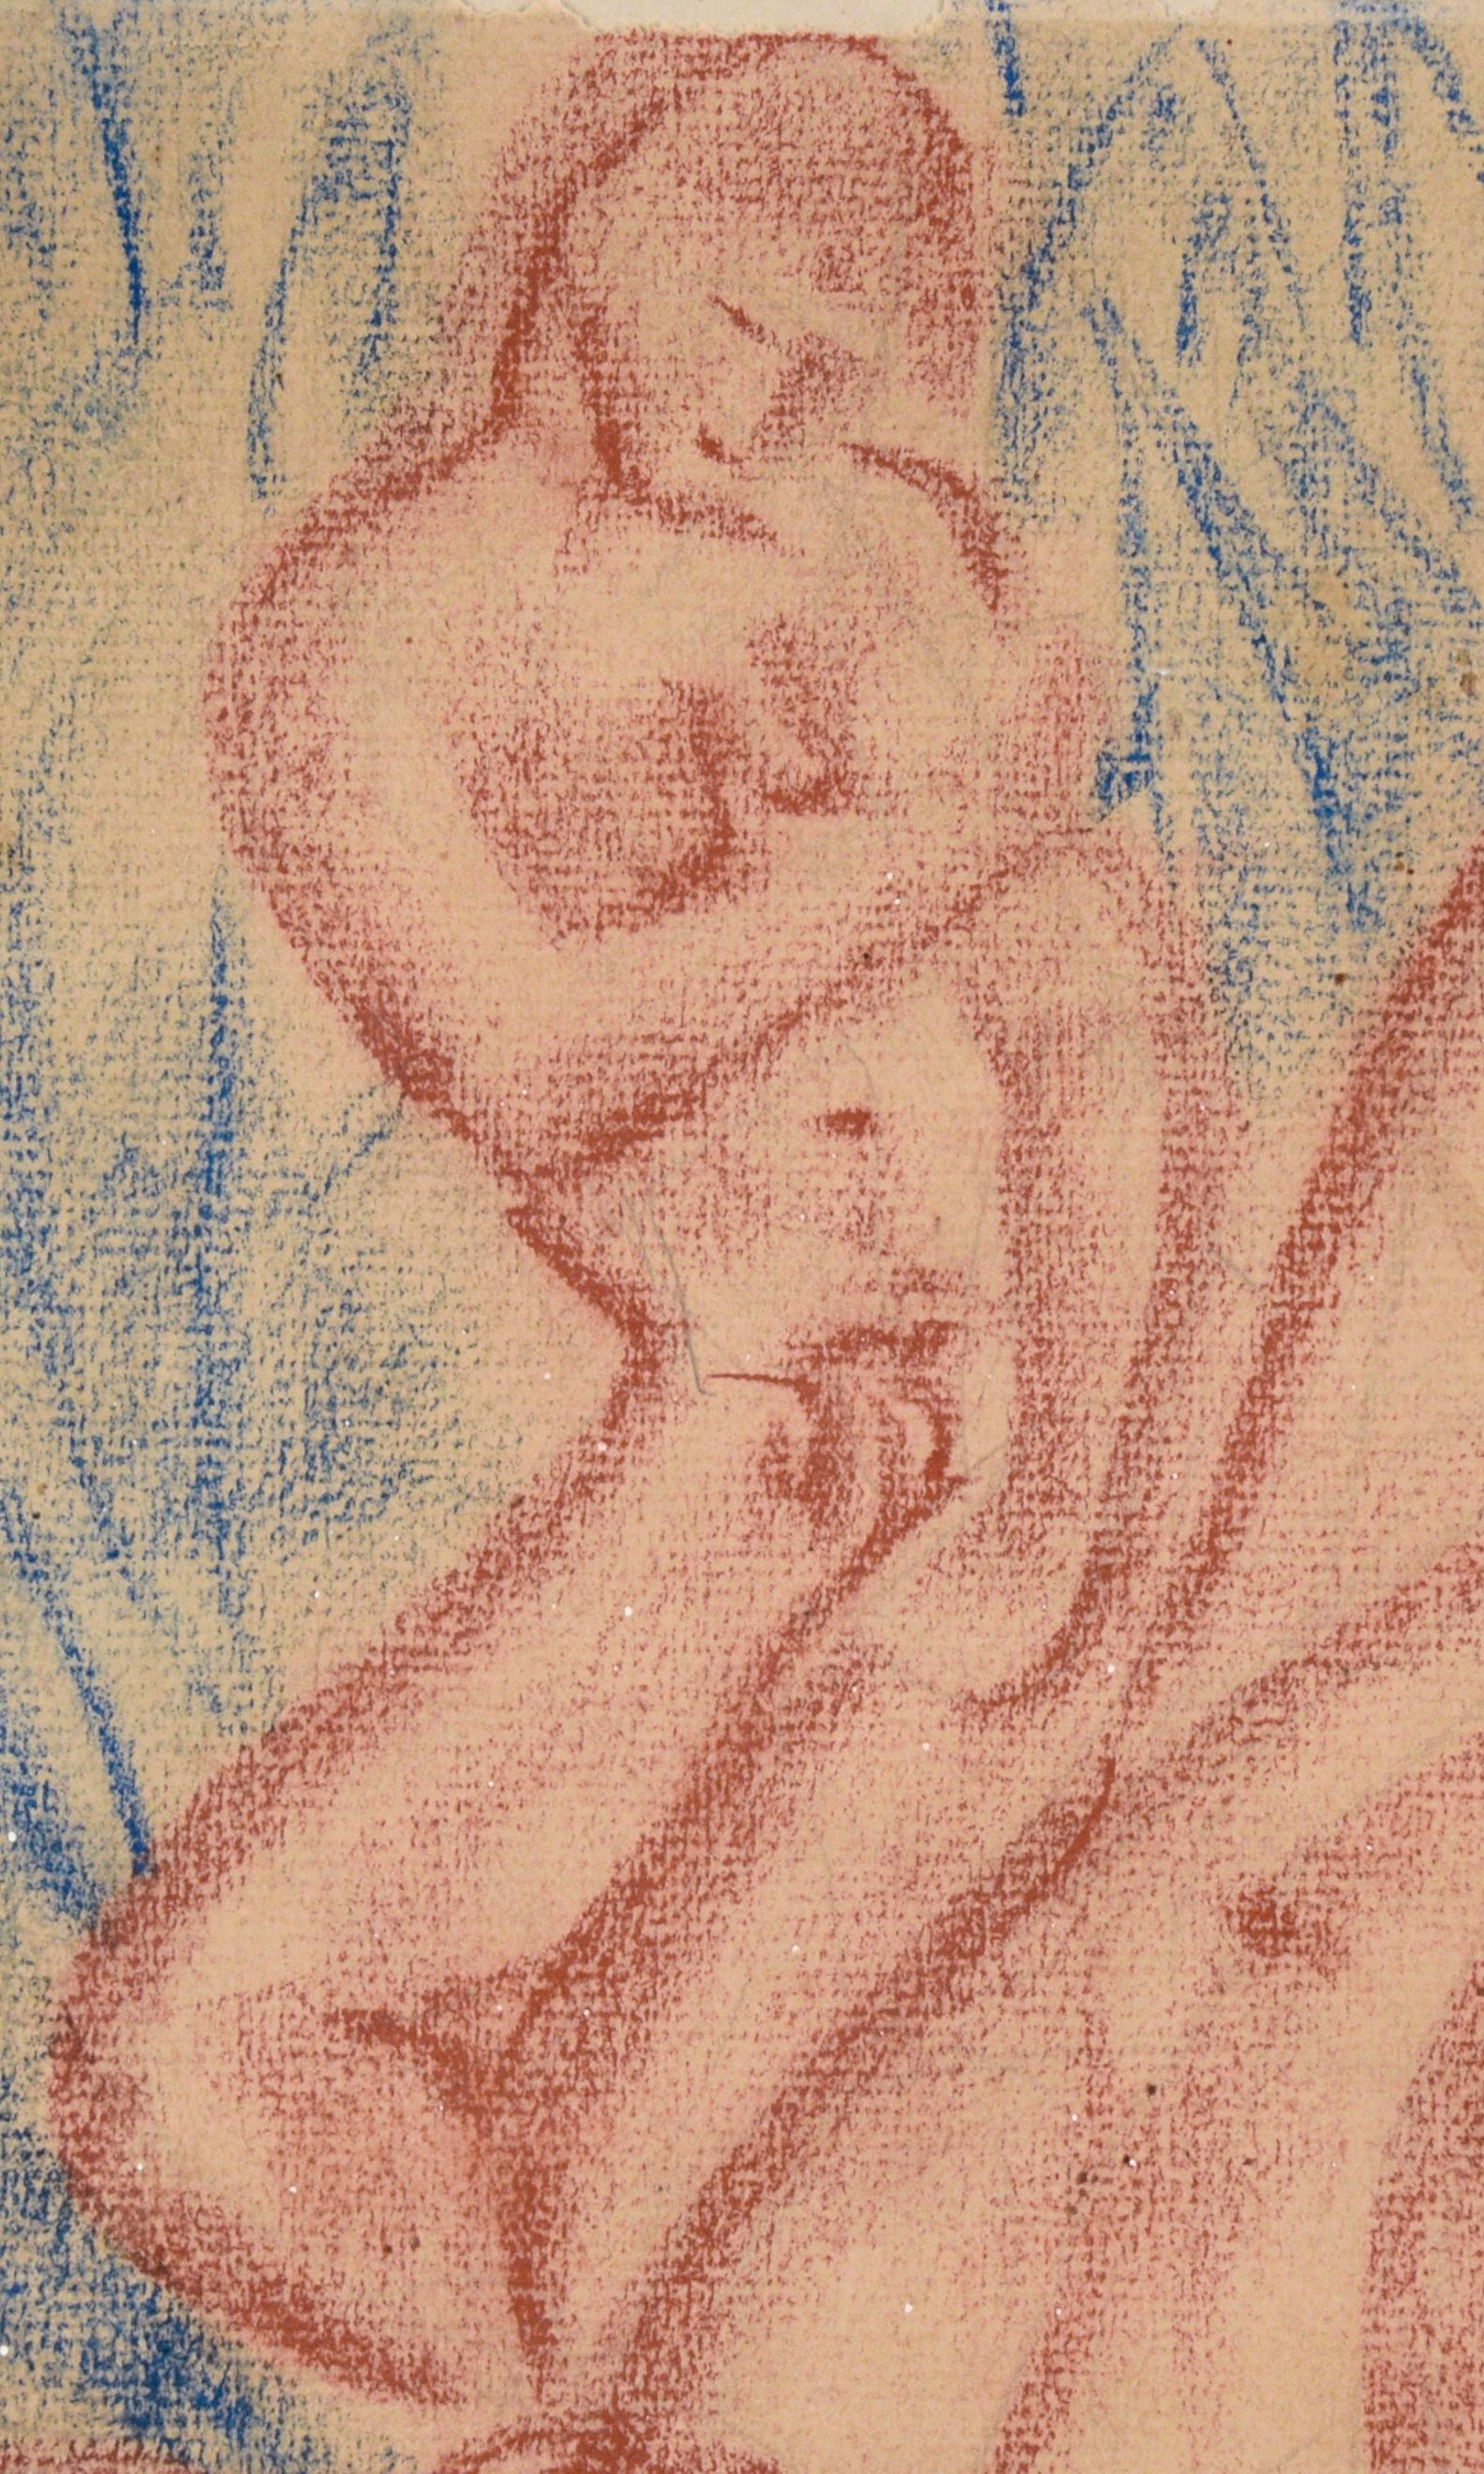 Vintage 3 Figurative Nudes in Conté Crayon on Paper (1946) by Matté‎  For Sale 1